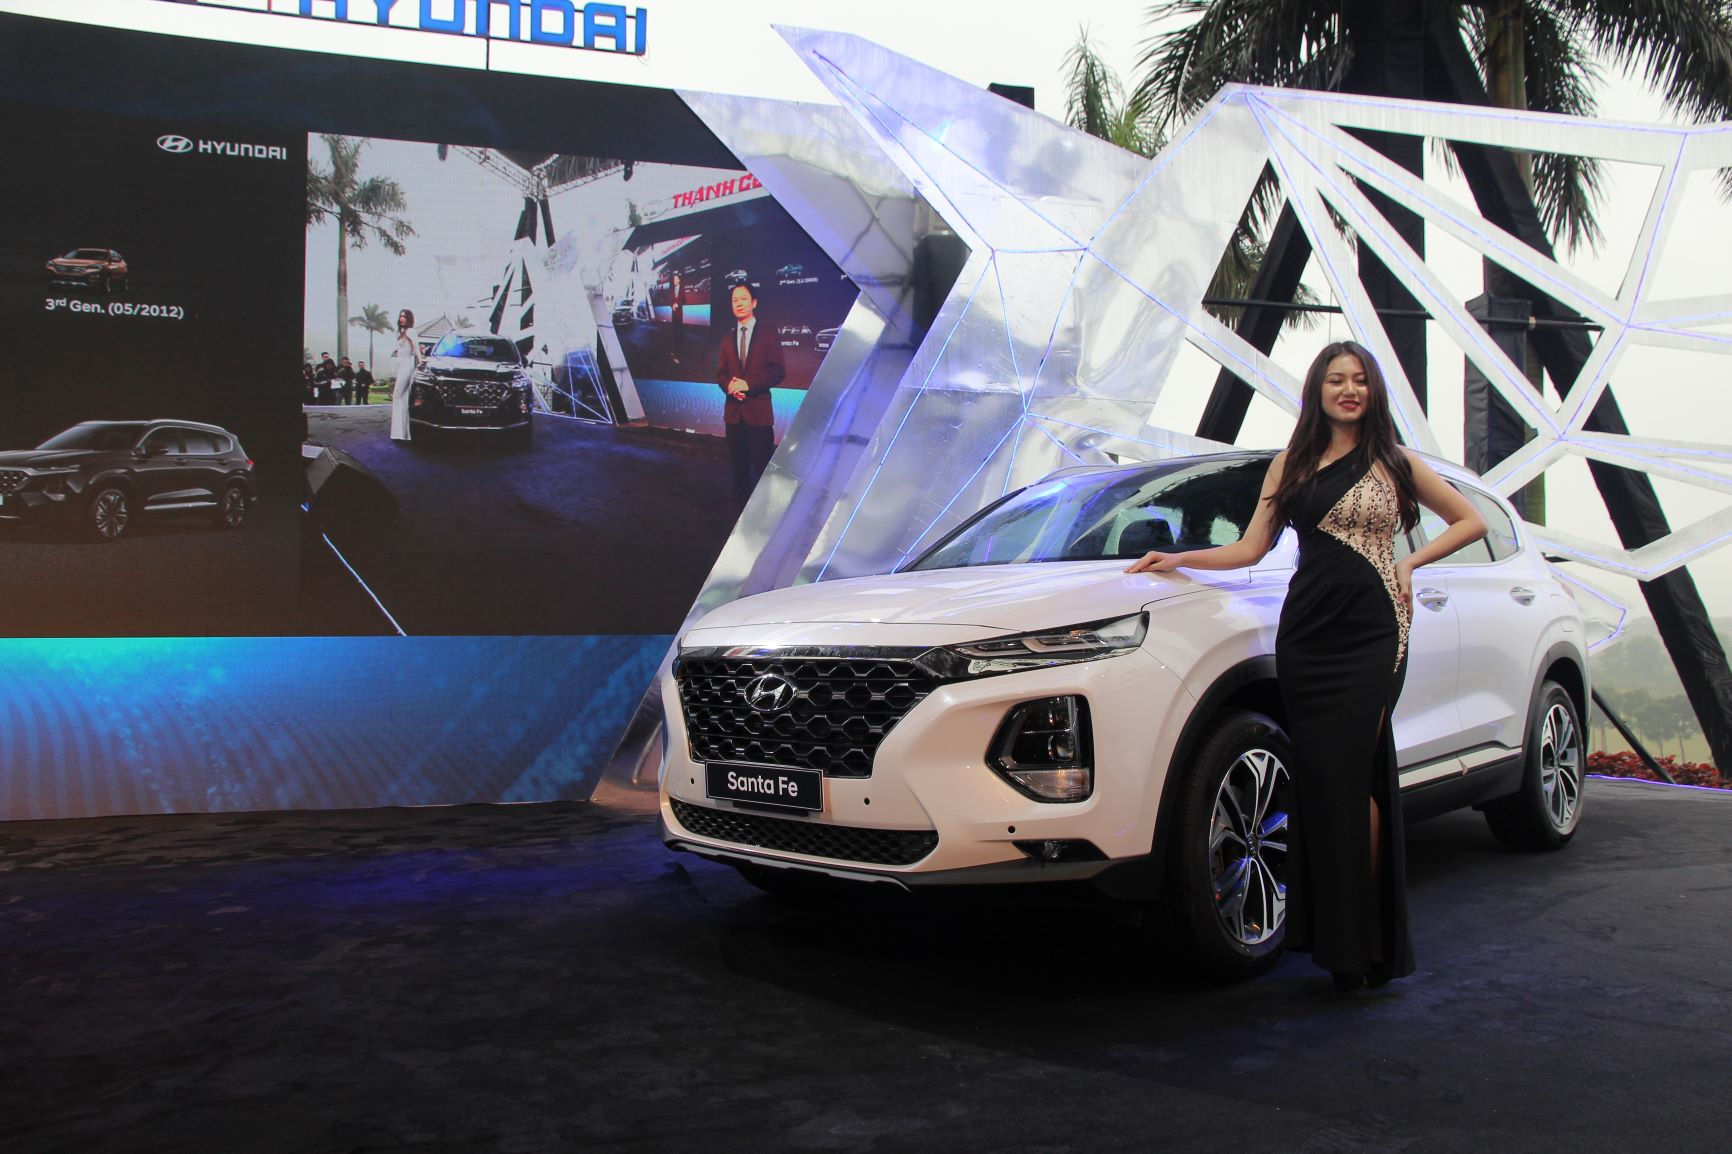 Hyundai Thành Công ra mắt SataFe trong tiết trời lạnh giá ở Ninh Bình.